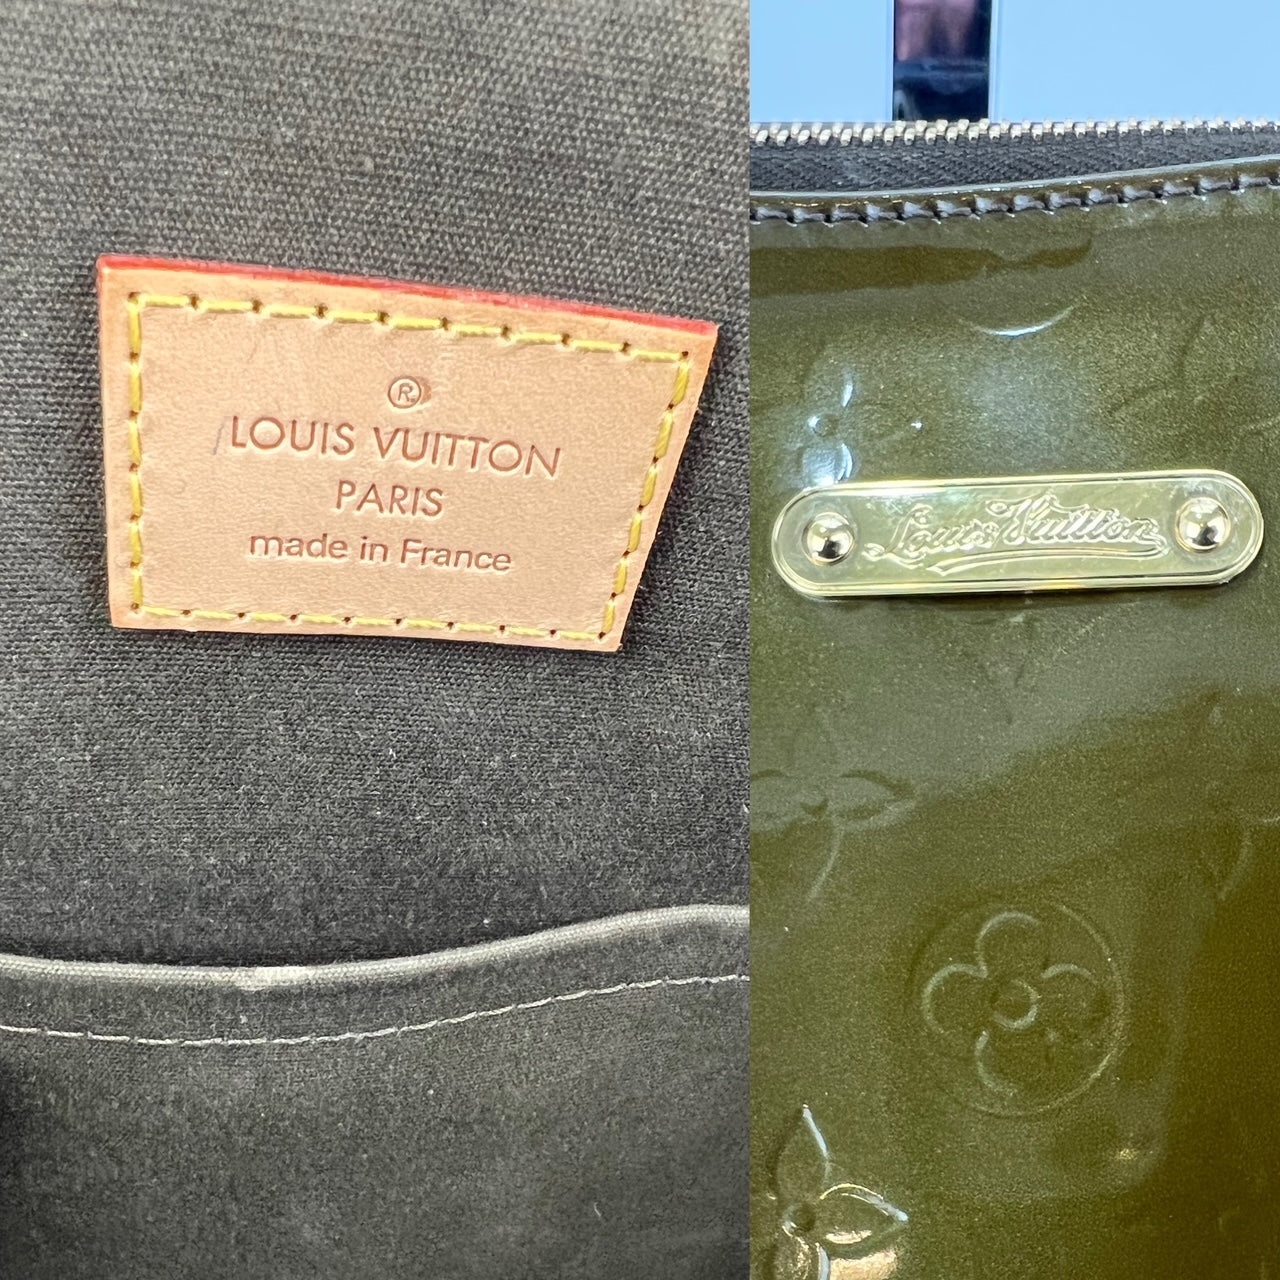 Louis Vuitton Louis Vuitton Bellevue GM Dark Green Vernis Leather